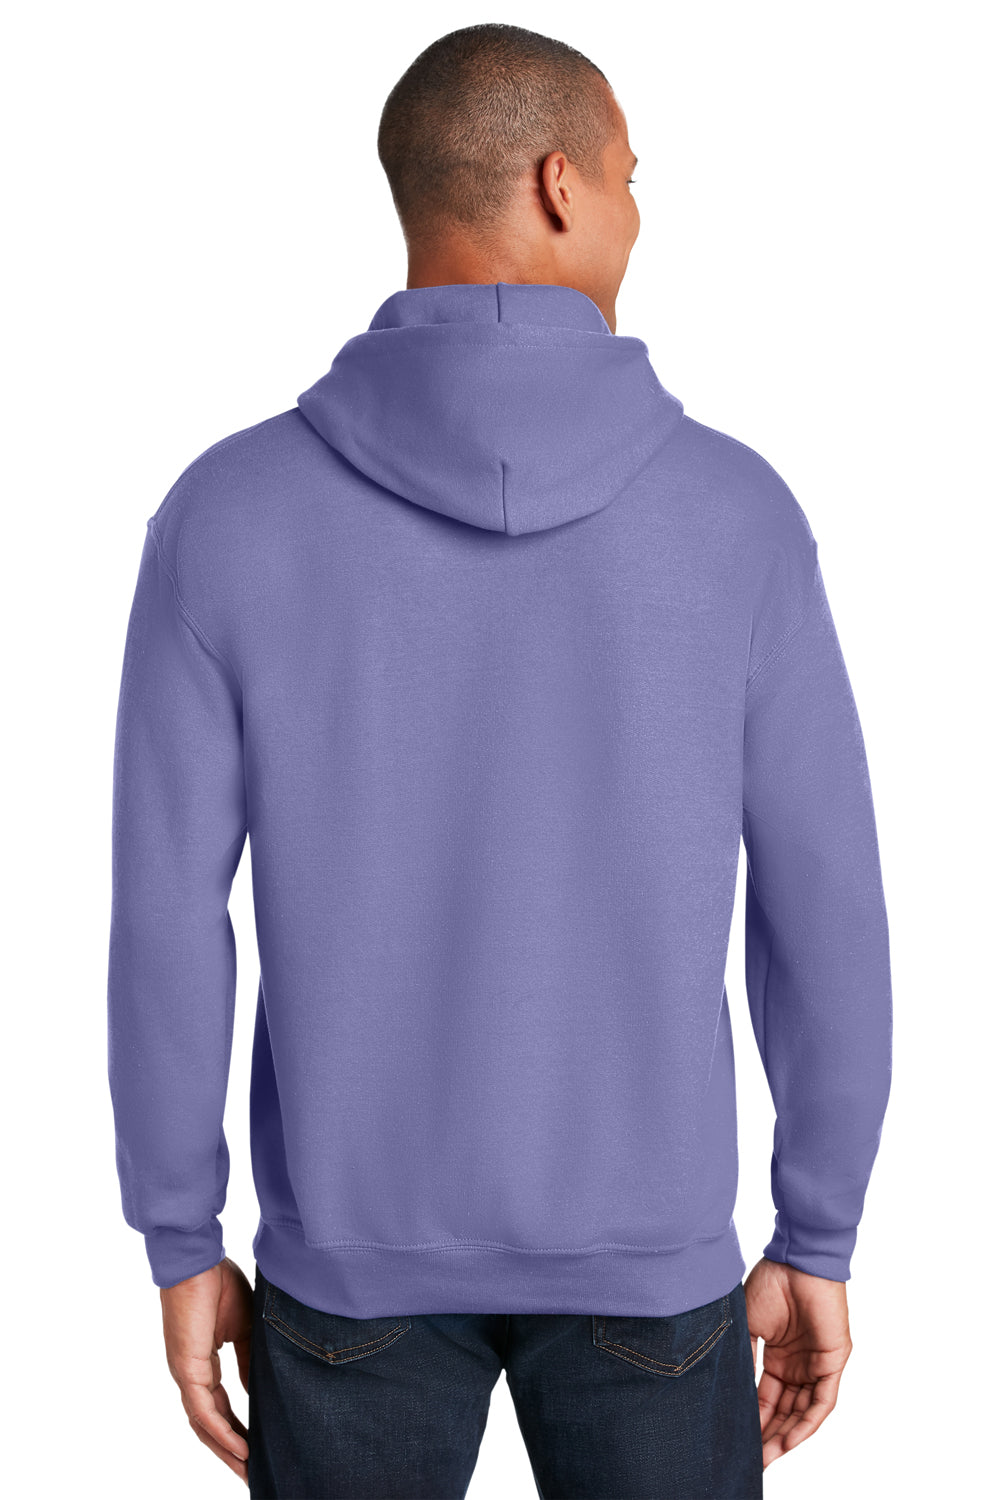 Gildan Mens Hooded Sweatshirt Hoodie Violet Purple Back